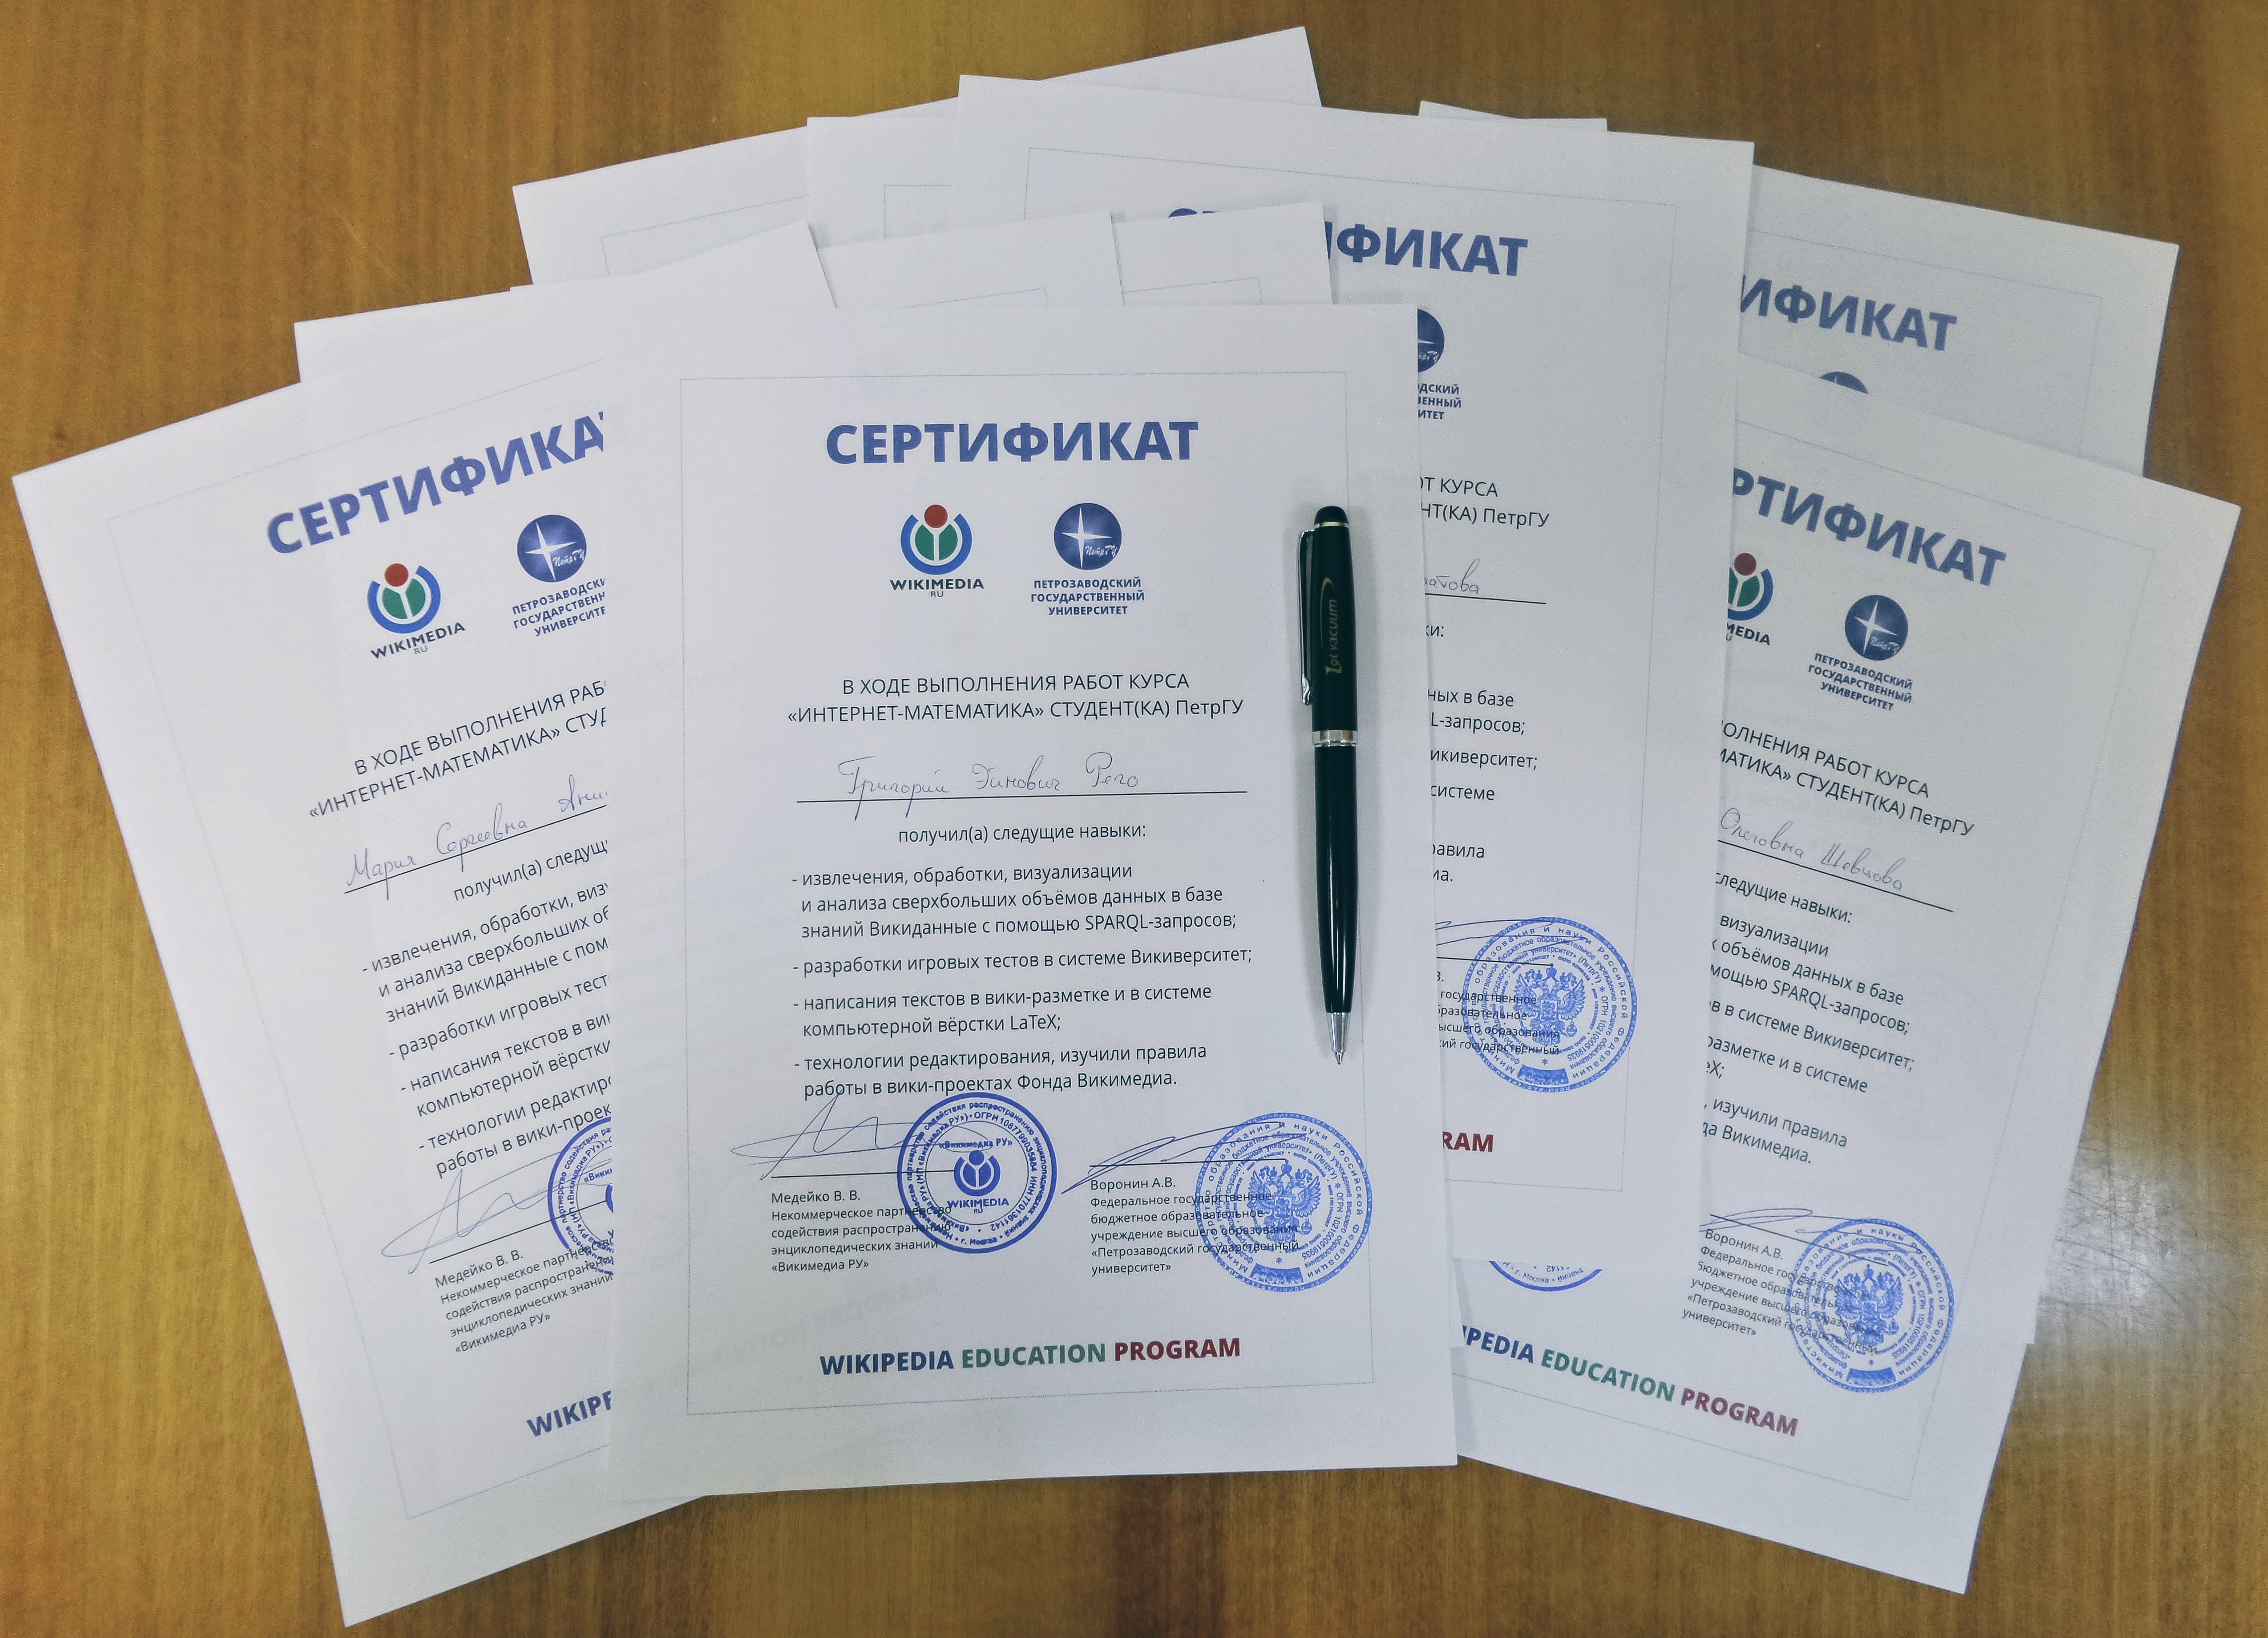 Сертификаты студентов ПетрГУ об успешном окончании курса Интернет-математика (декабрь 2017)